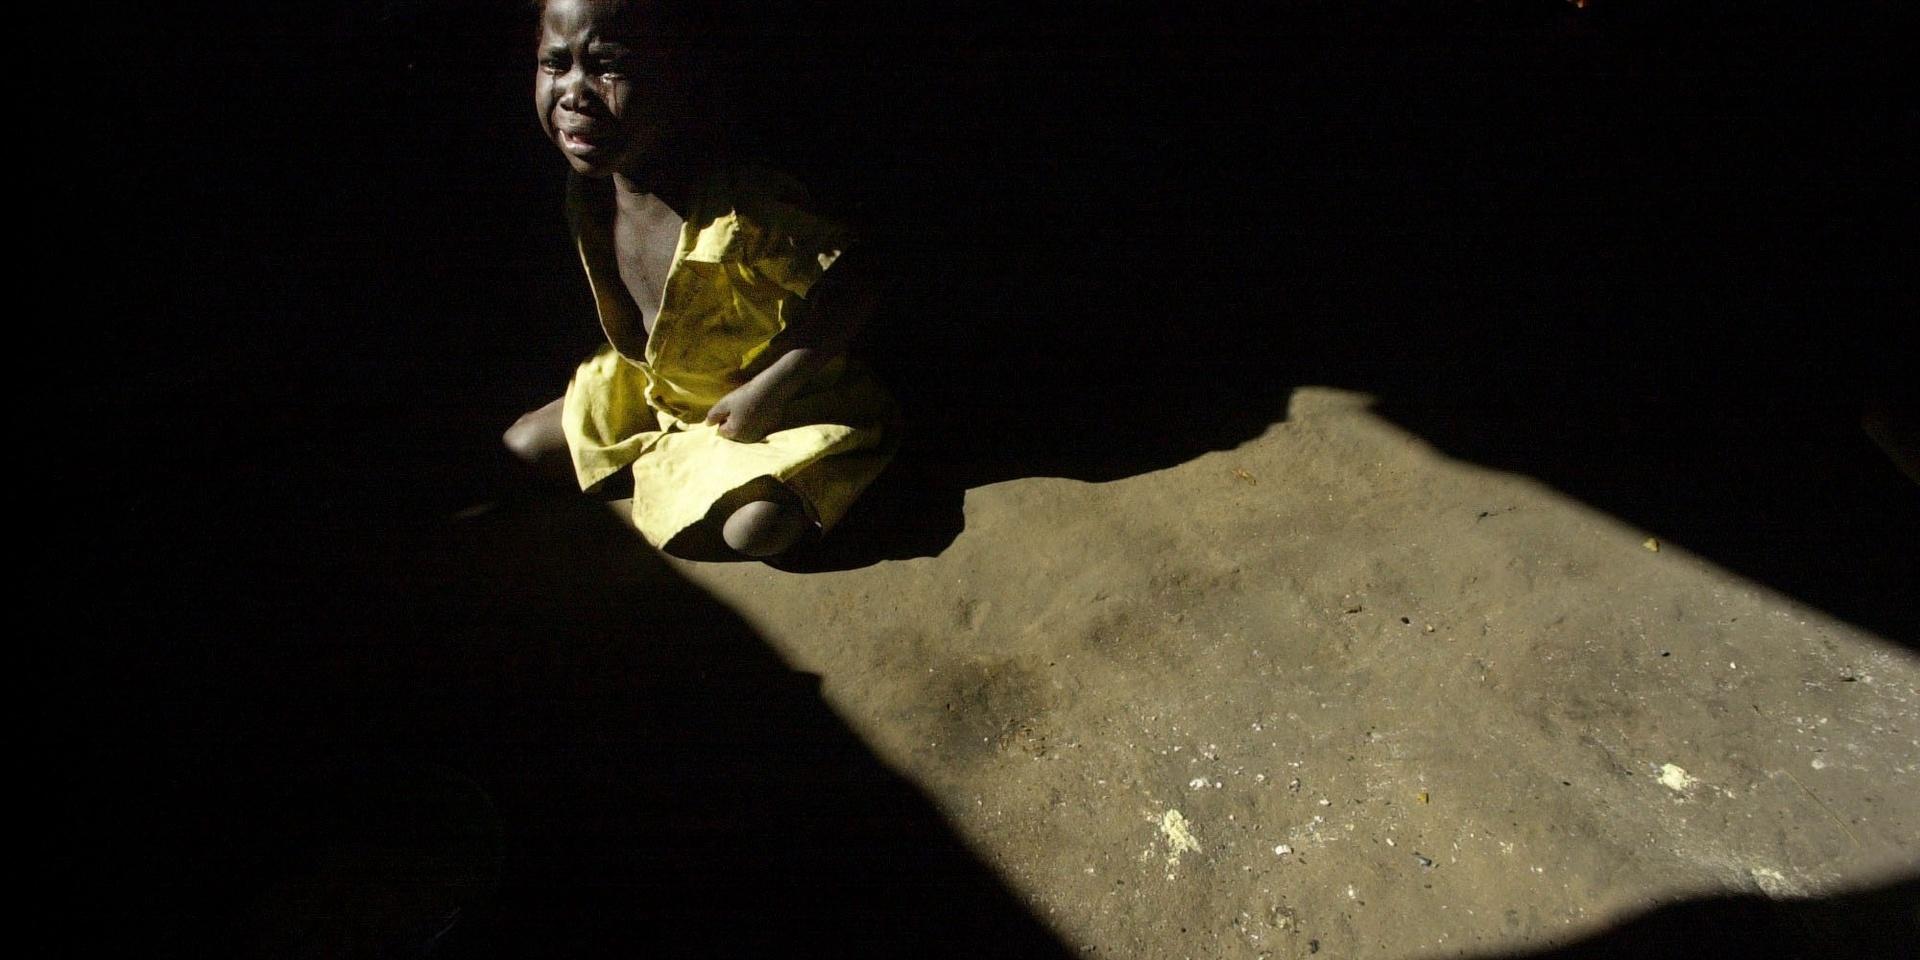 De högre temperaturerna leder till torka, med minskad jordbruksproduktion som följd. På bilden ett barn som gråter av hunger på ett sjukhus i Kuito i Angola.